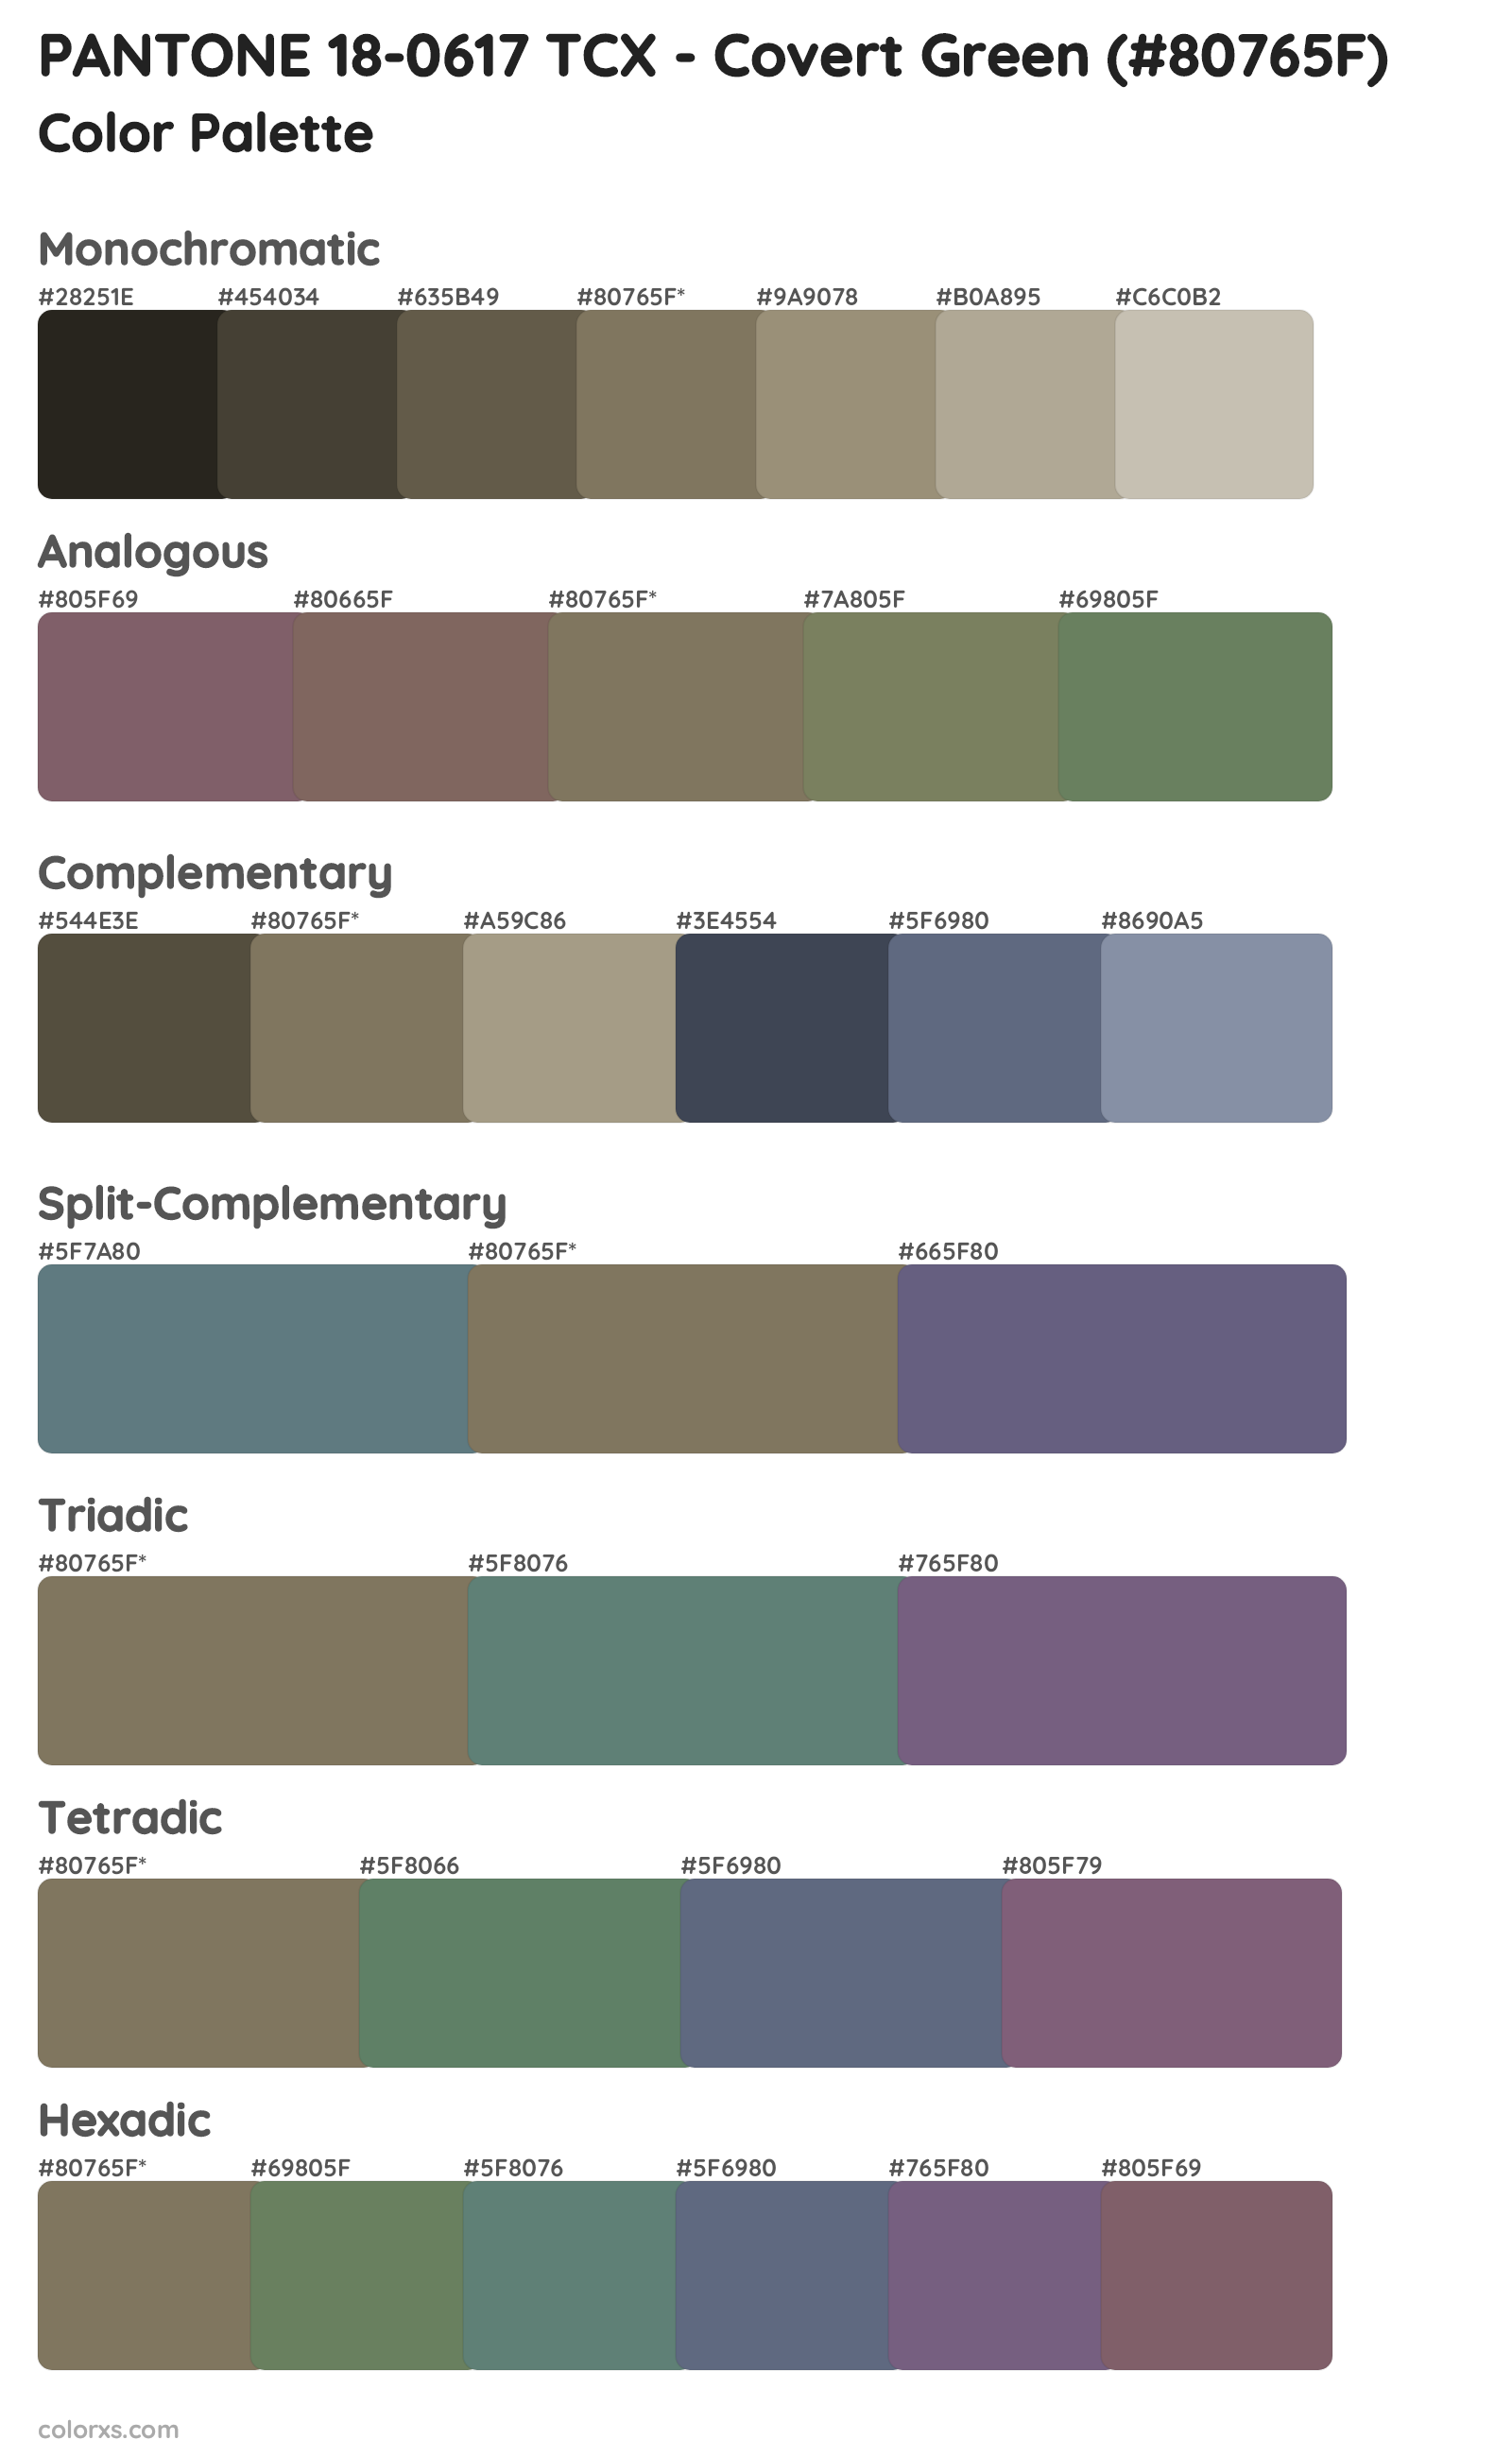 PANTONE 18-0617 TCX - Covert Green Color Scheme Palettes